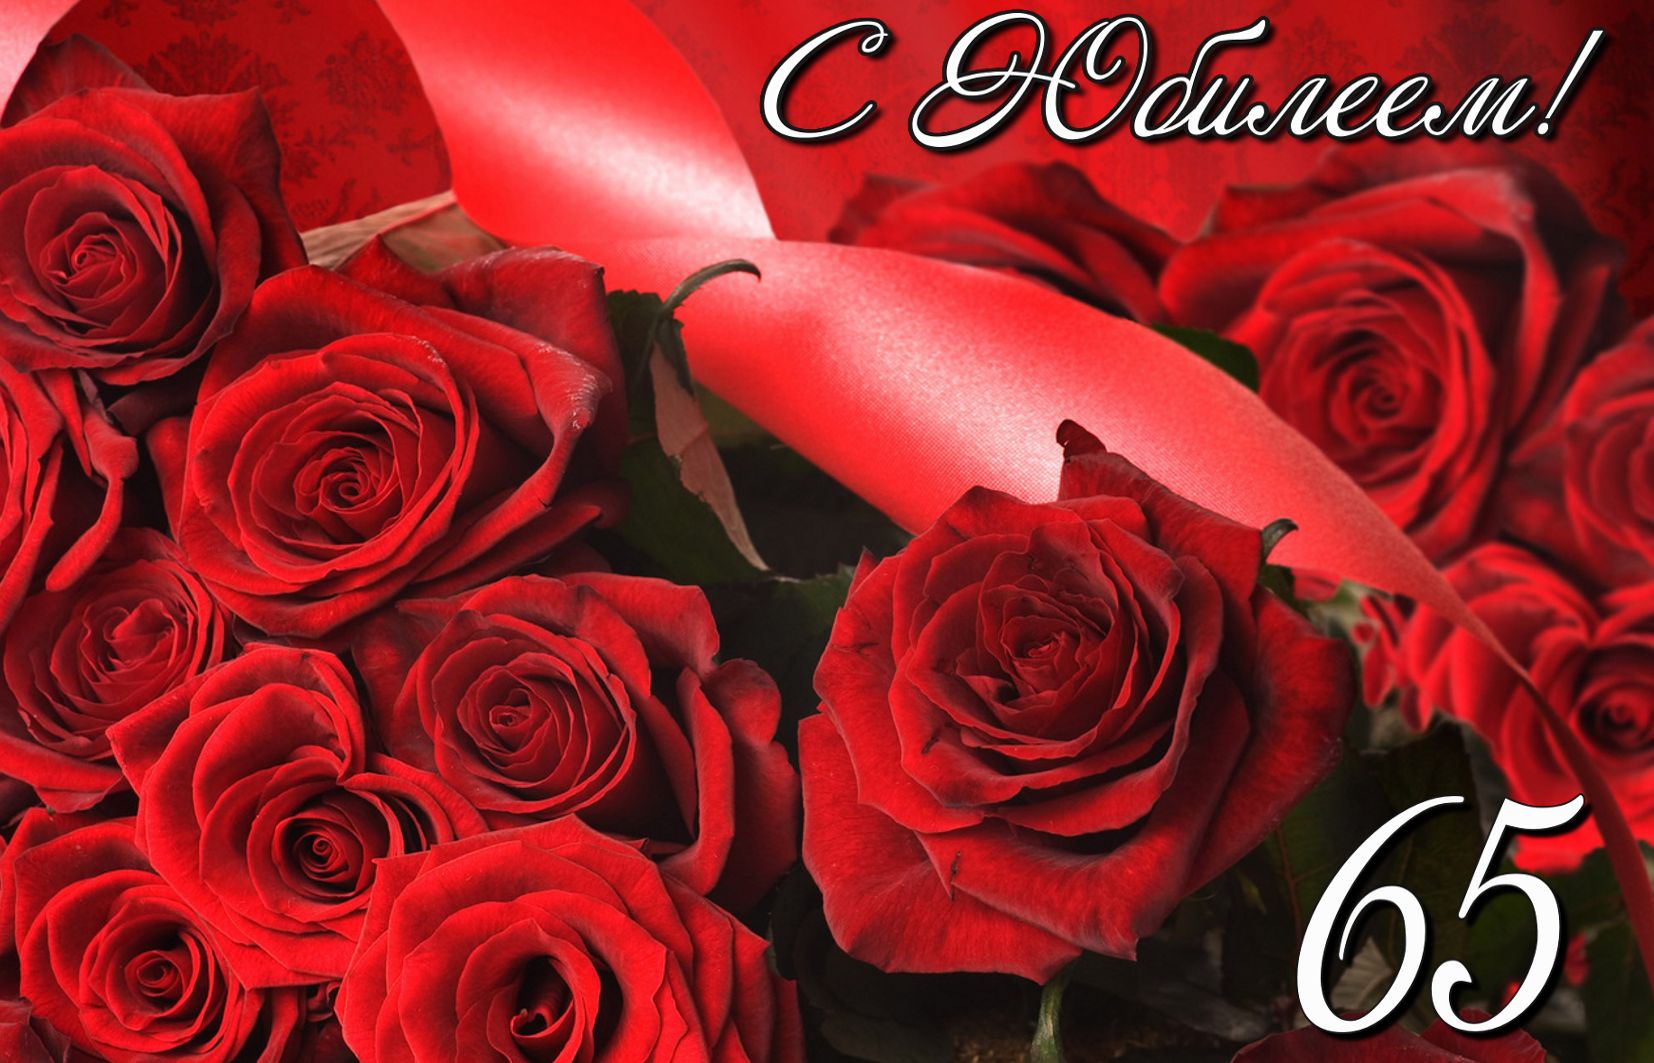 Открытка на 65 лет - розы на красном фоне к юбилею